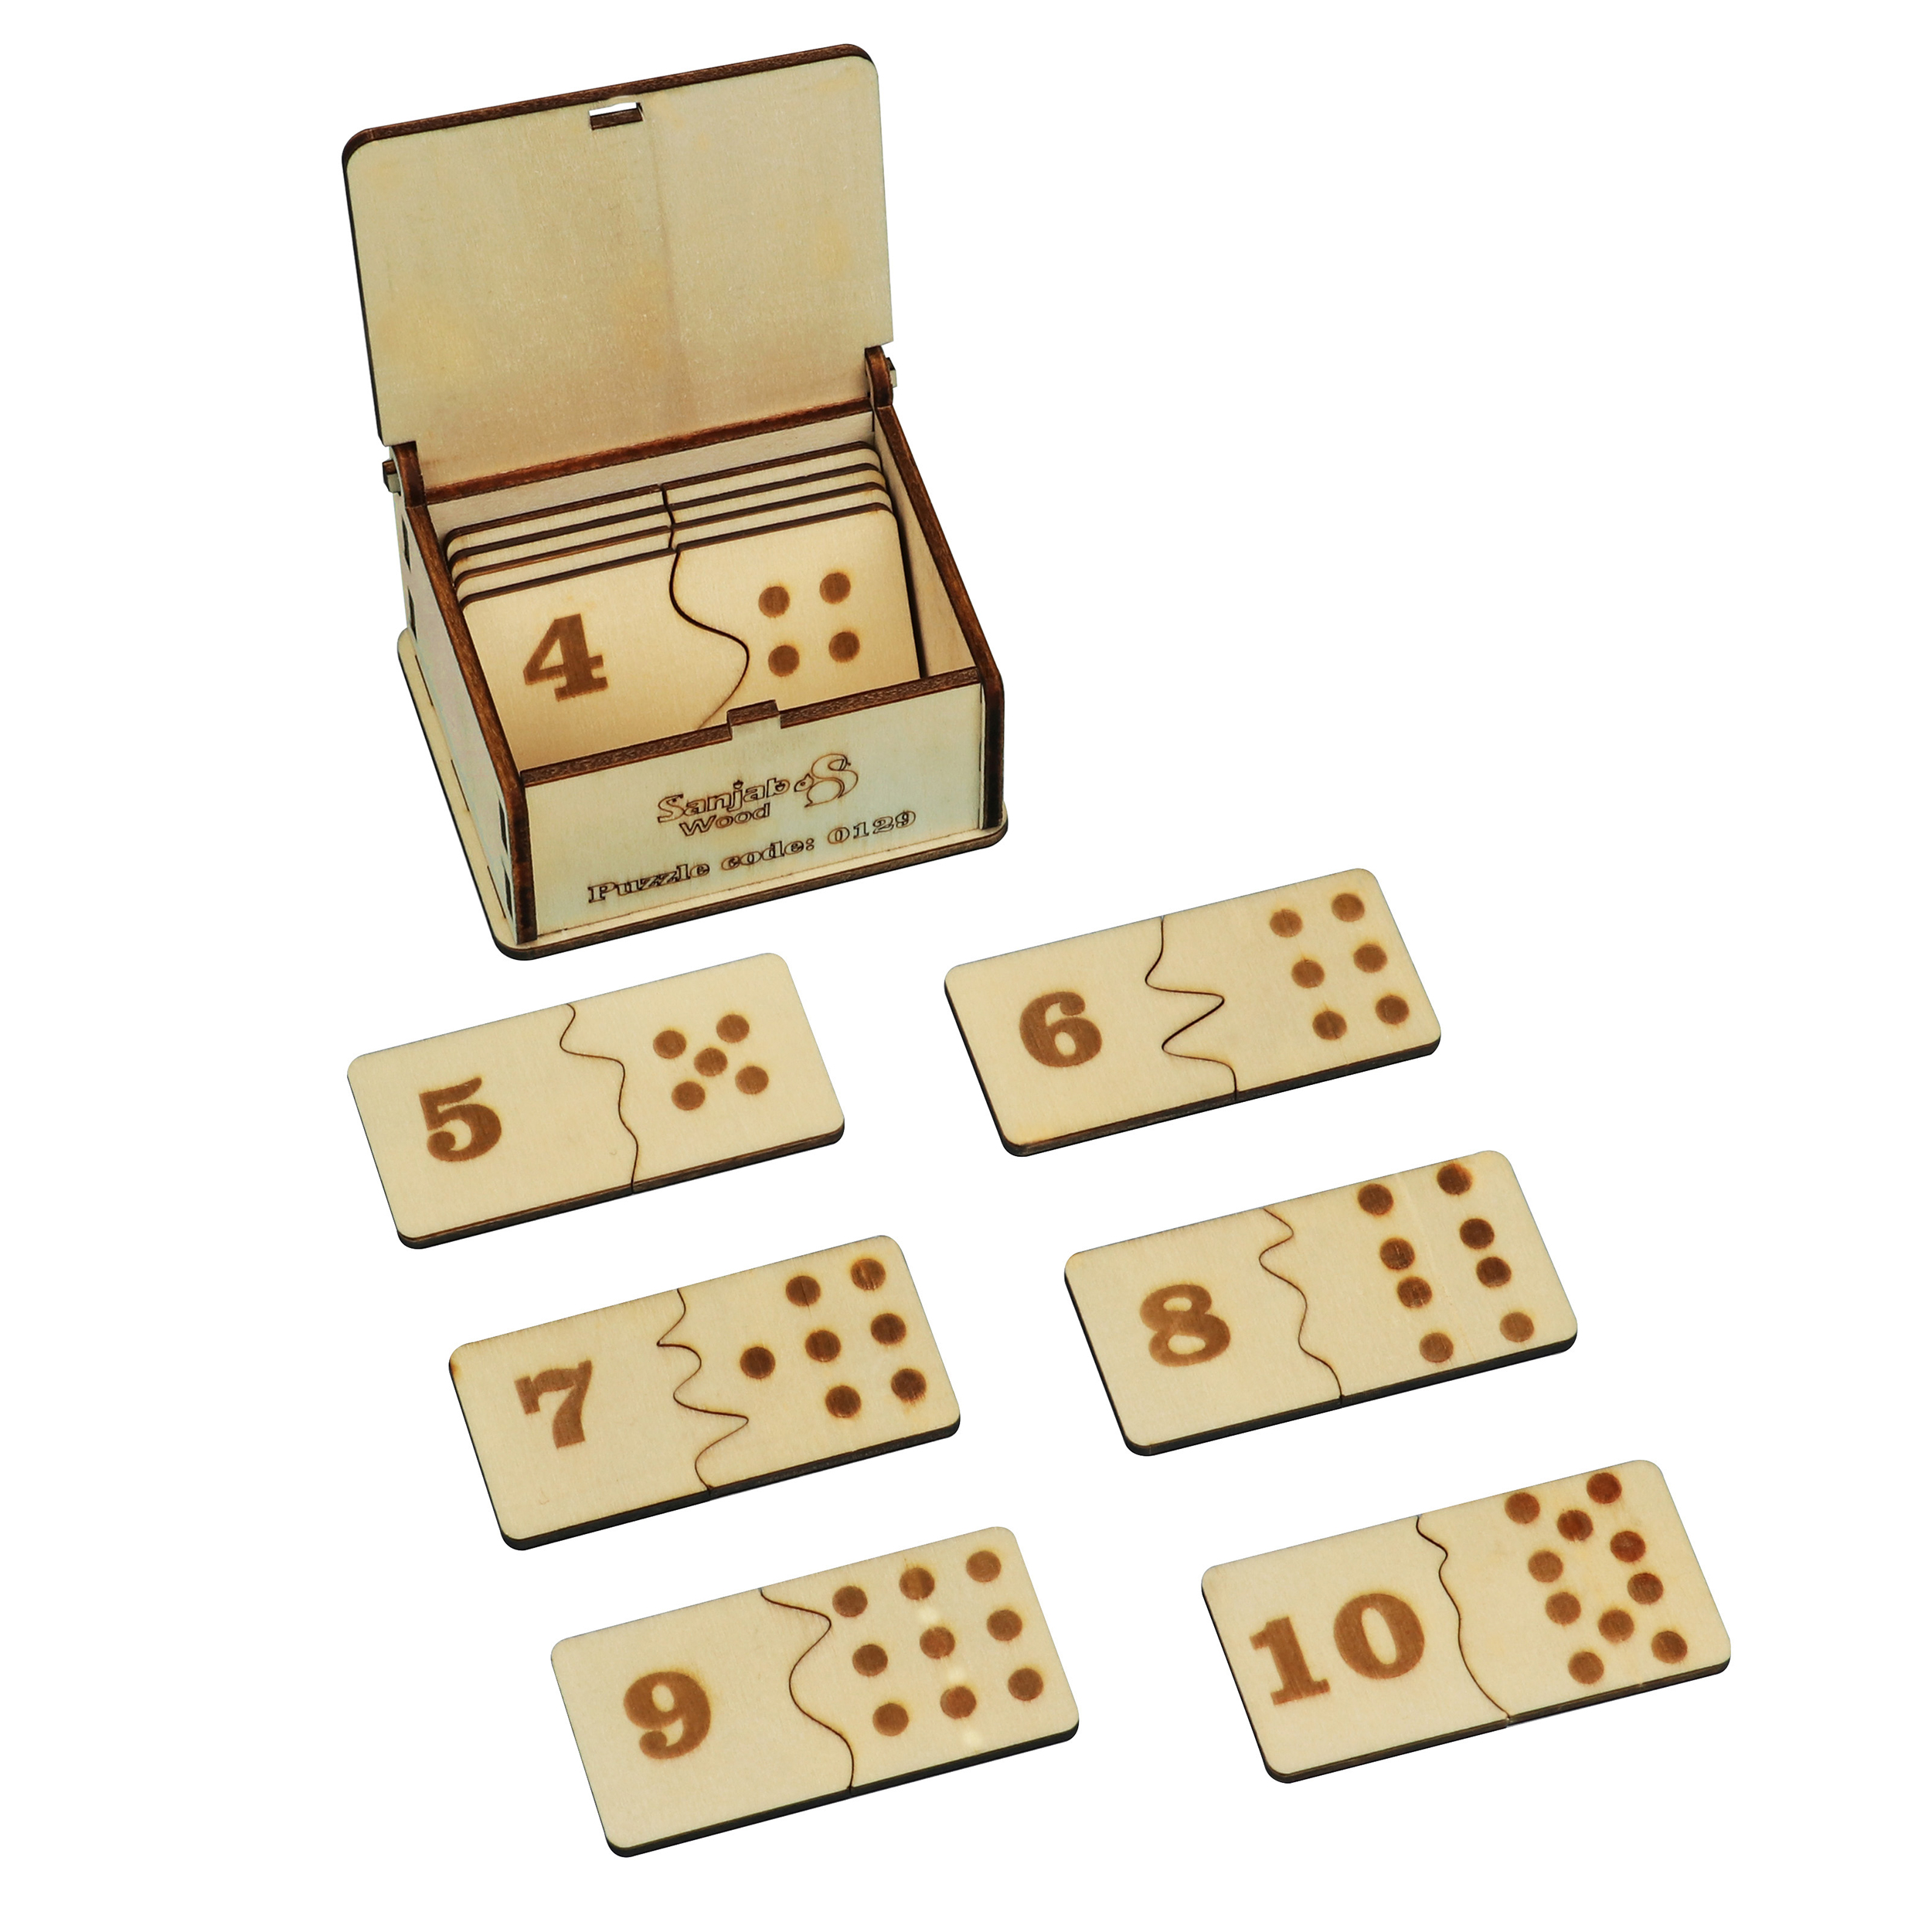 بازی آموزشی اعداد سنجاب وود مدل Dominoes number Puzzle